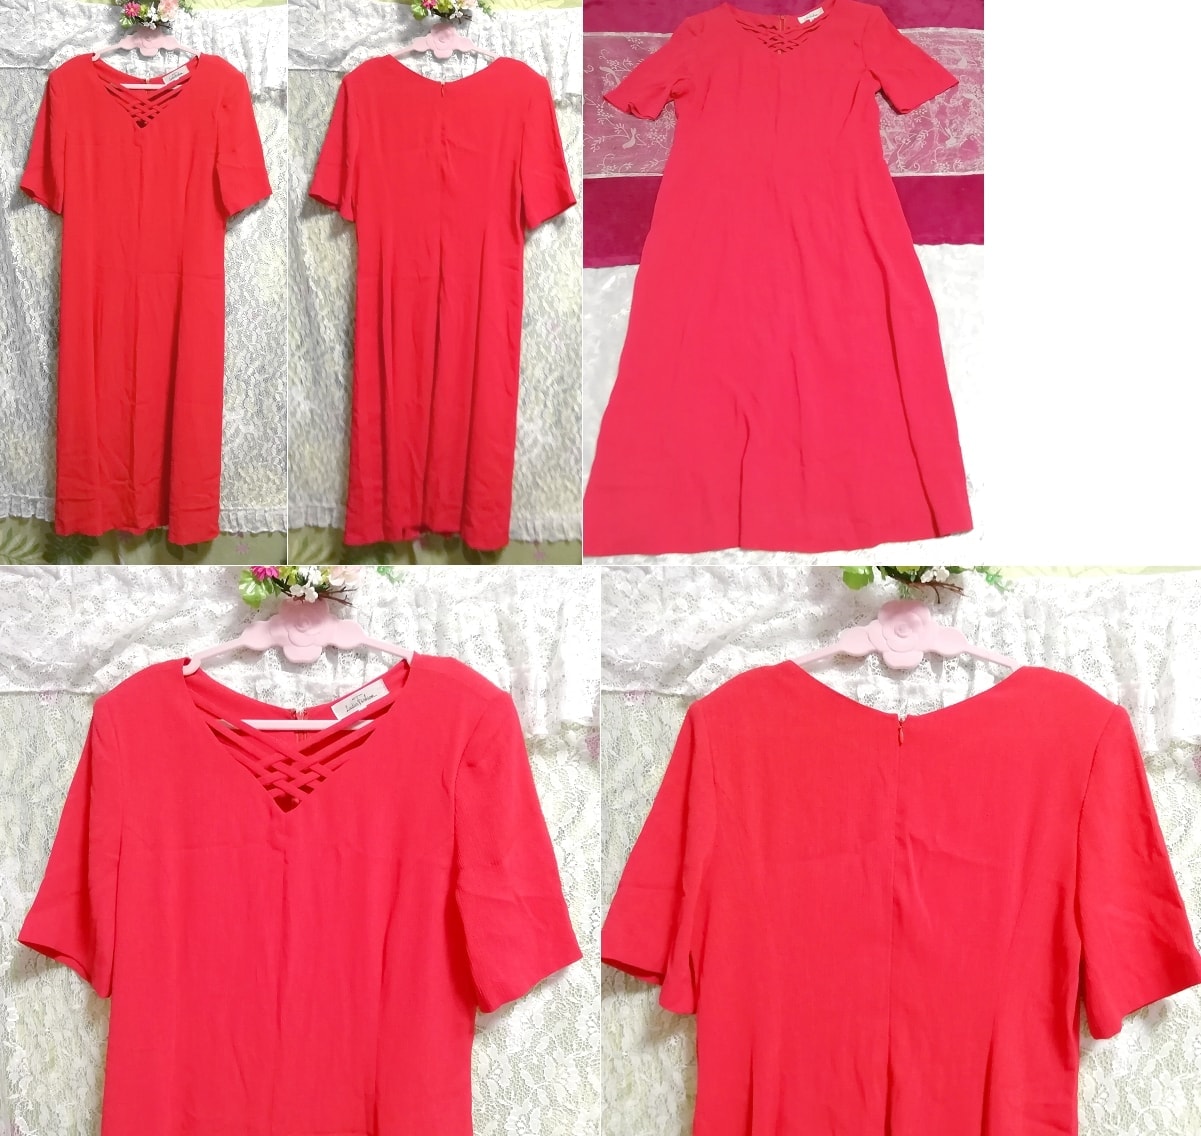 赤レッド半袖ネグリジェチュニックスカートワンピース Red short sleeve negligee tunic skirt dress, チュニック, 半袖, Mサイズ